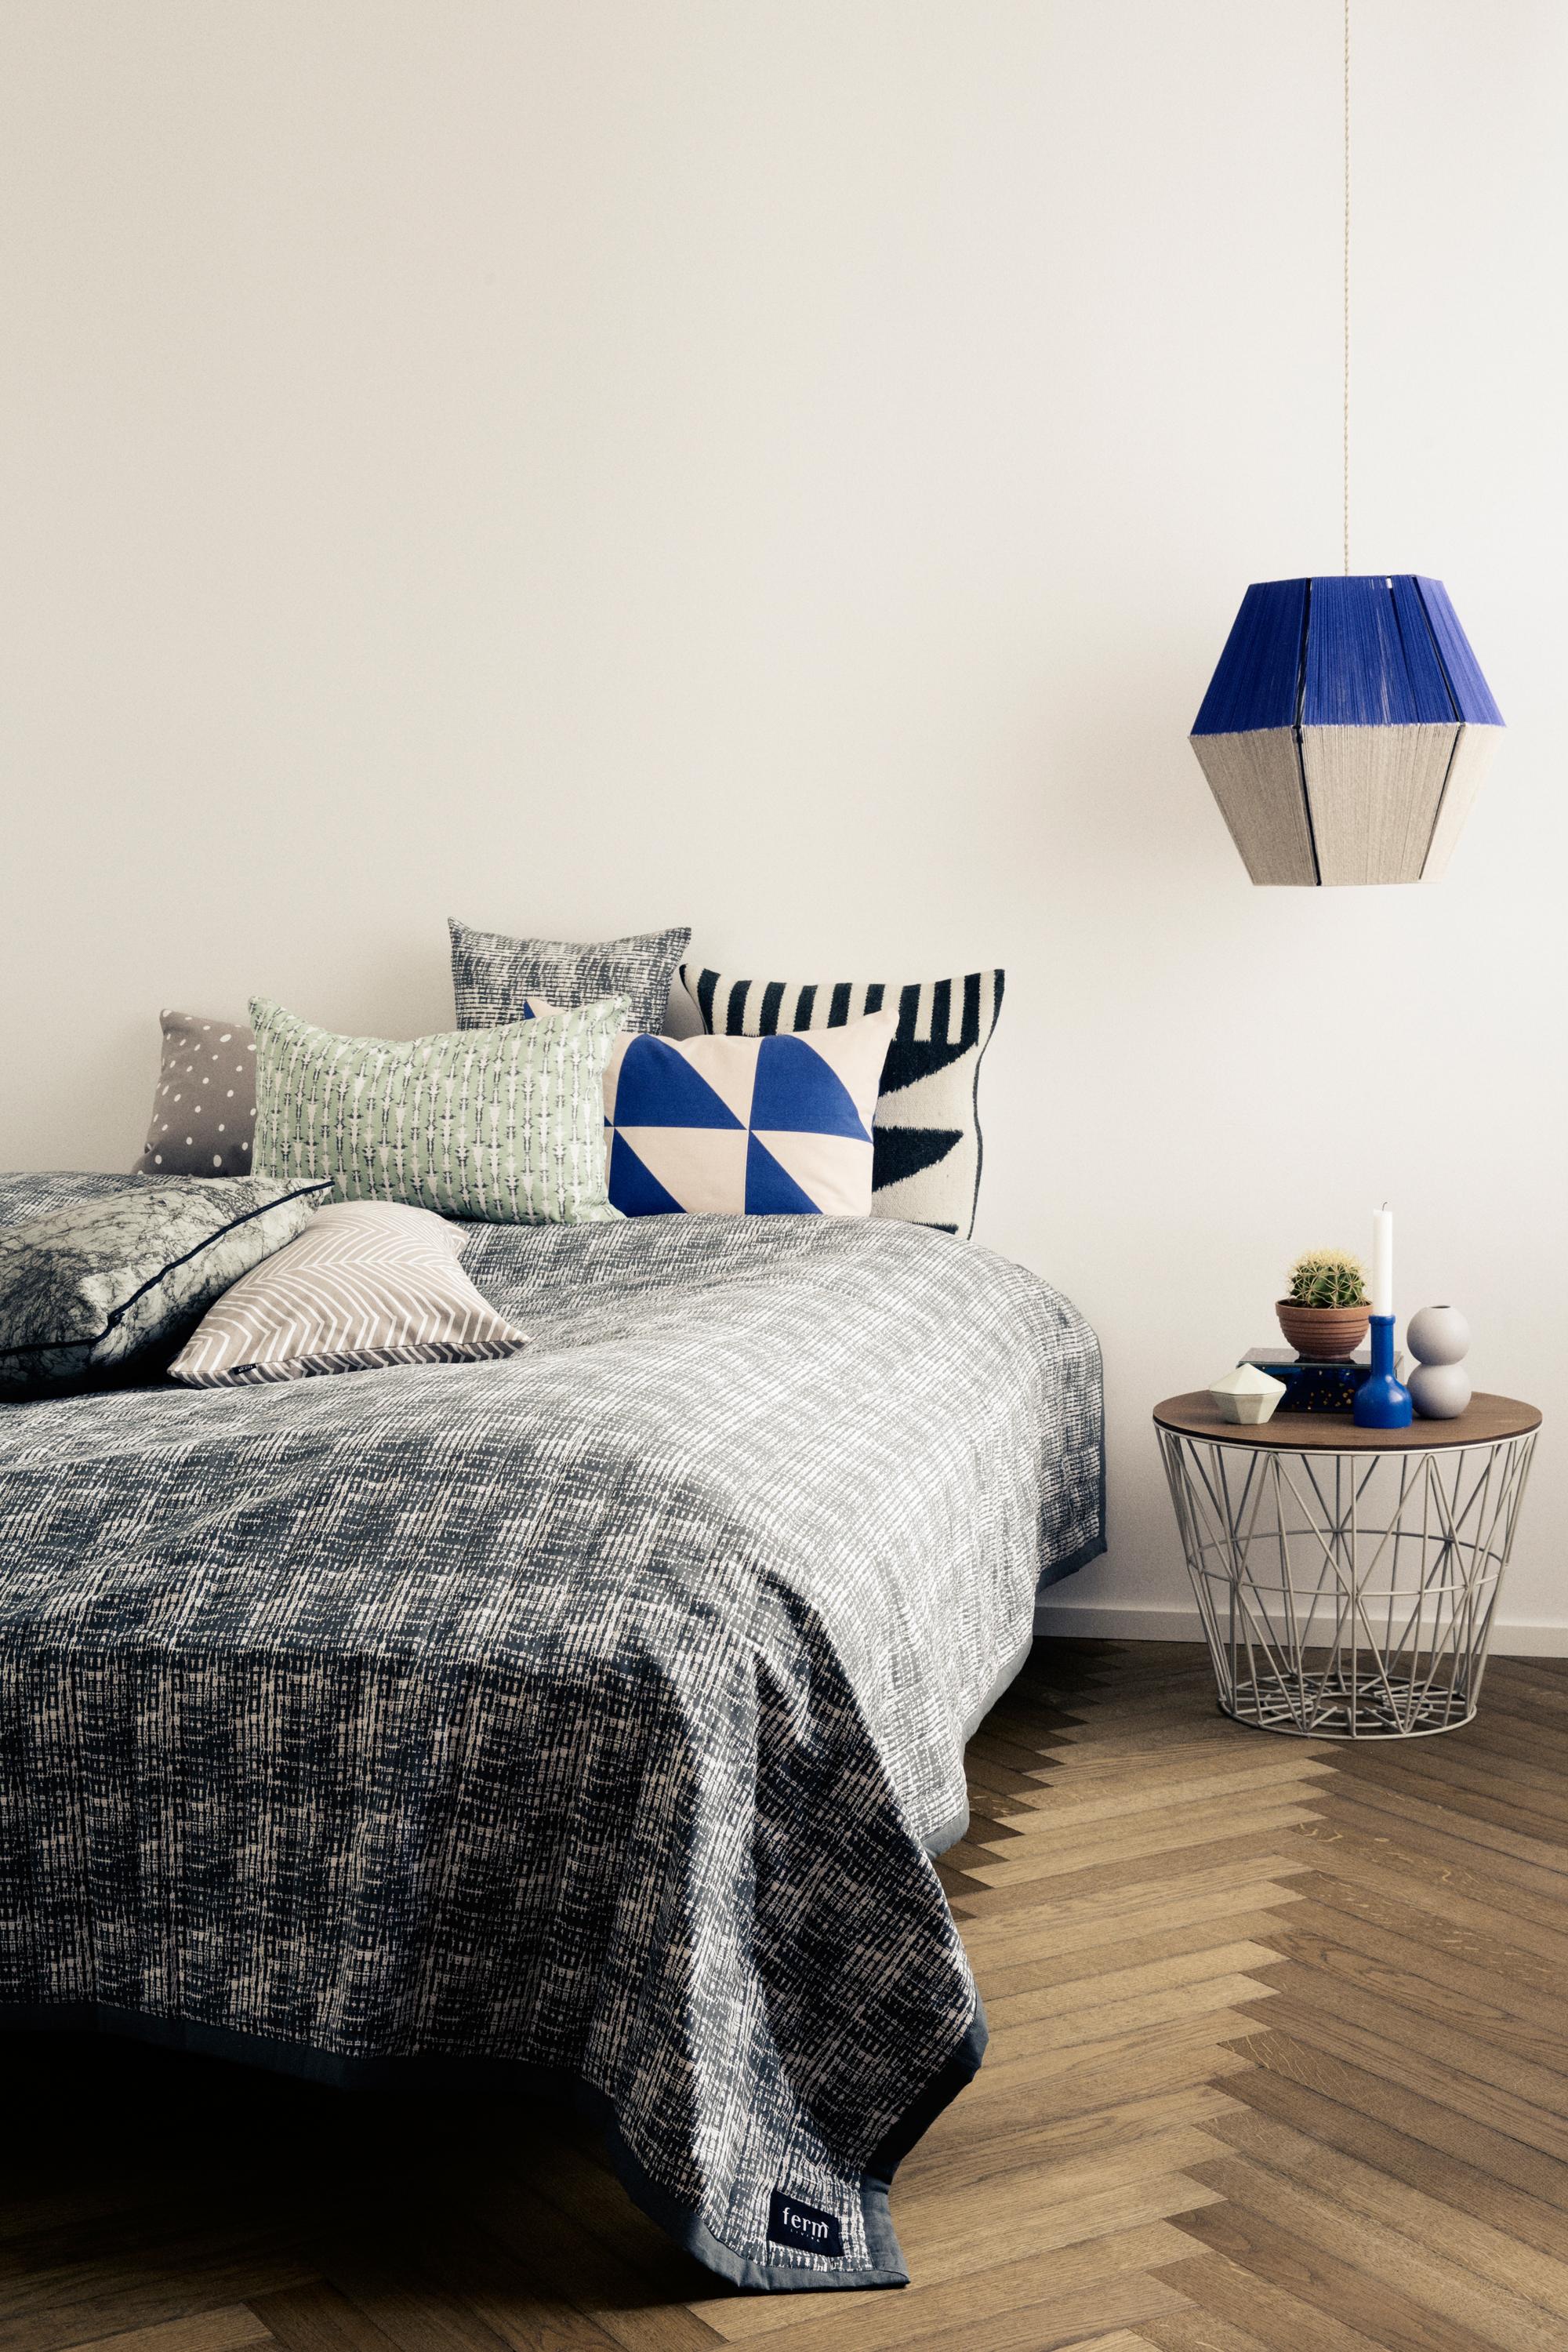 Blau-weiße Leuchte im Schlafzimmer #diy #lampion #berlinstyle ©Ferm Living